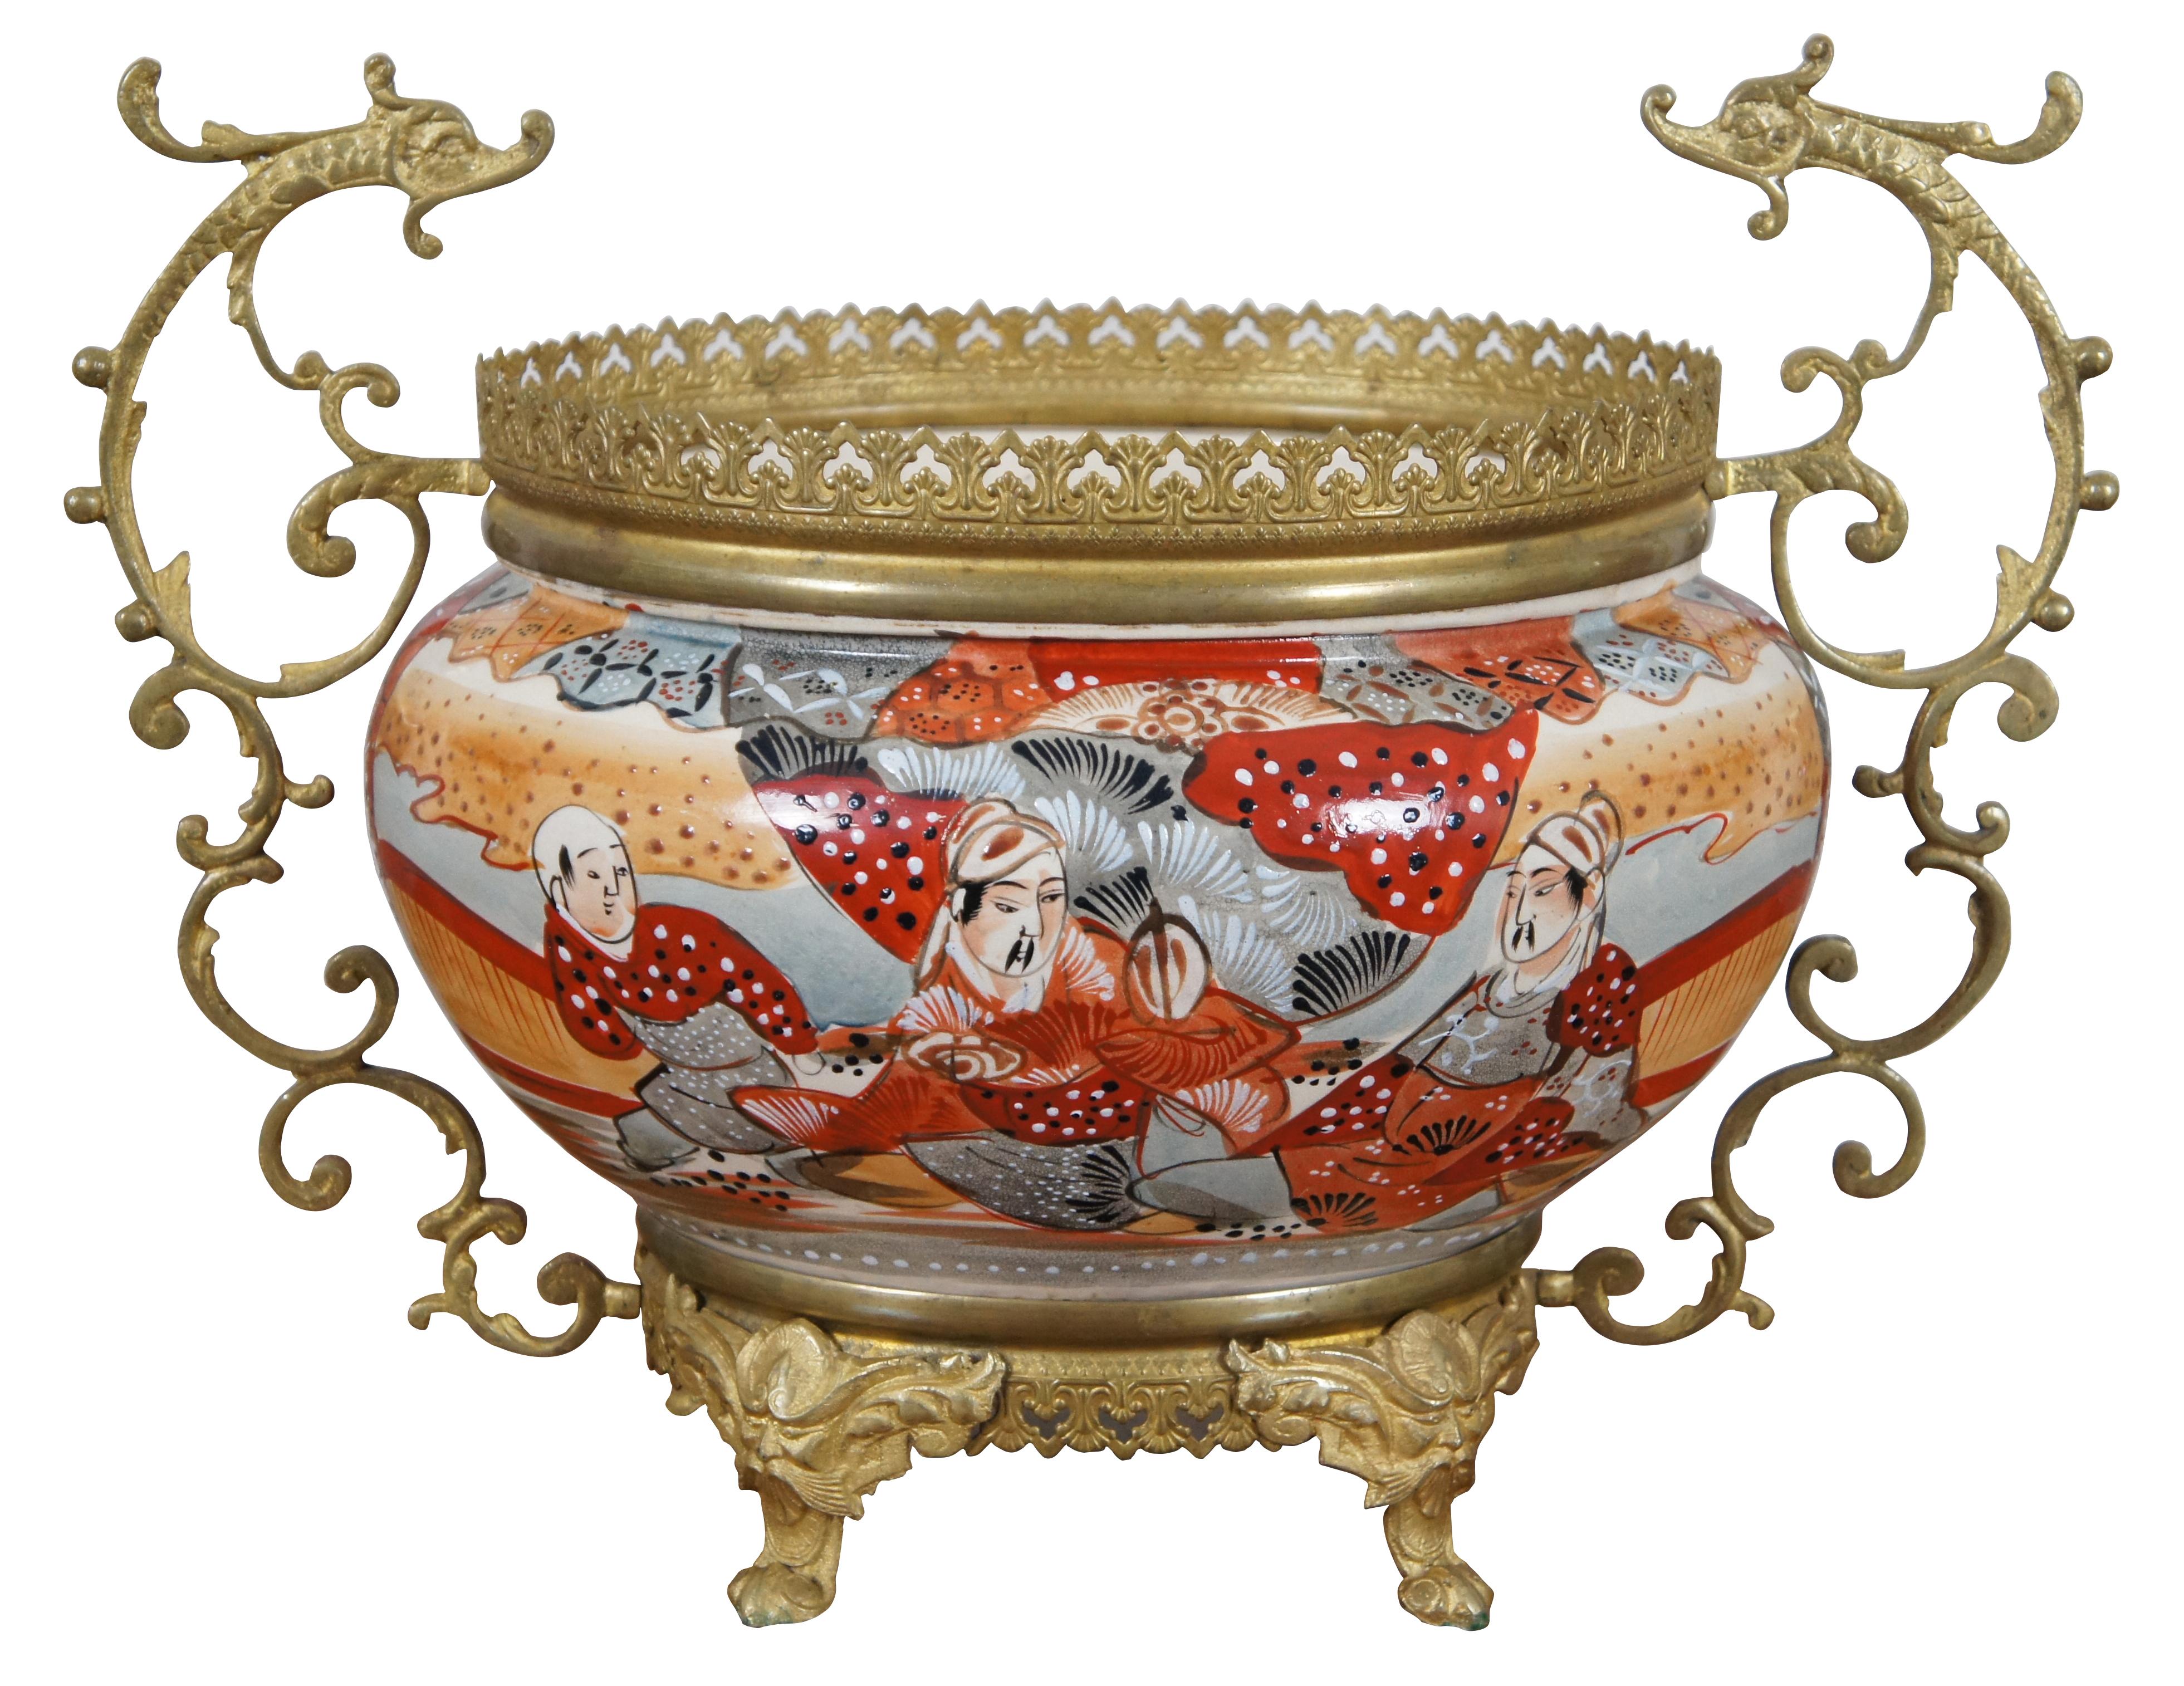 Rare ensemble de salon ancien composé de lampes à huile Kosmos Brenner en porcelaine japonaise Satsuma et laiton et d'une jardinière / cache-pot / planteur / urne. Tous deux sont peints en moriage avec des figures et des motifs rouges, orange, gris